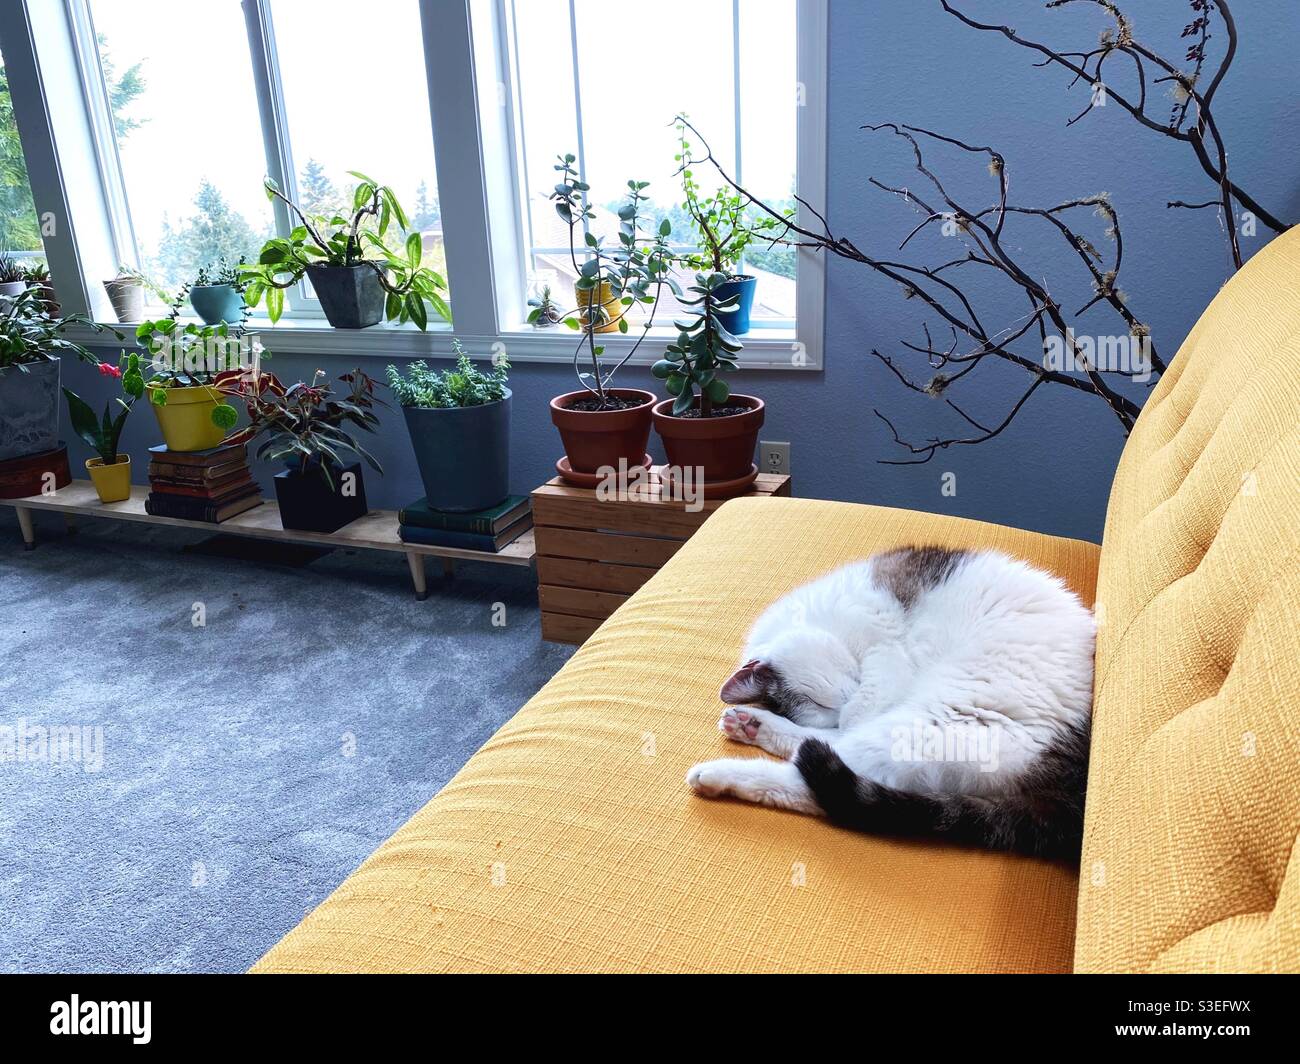 Eine Katze schläft auf einem gelben Sofa in einem Zimmer mit Zimmerpflanzen. Stockfoto